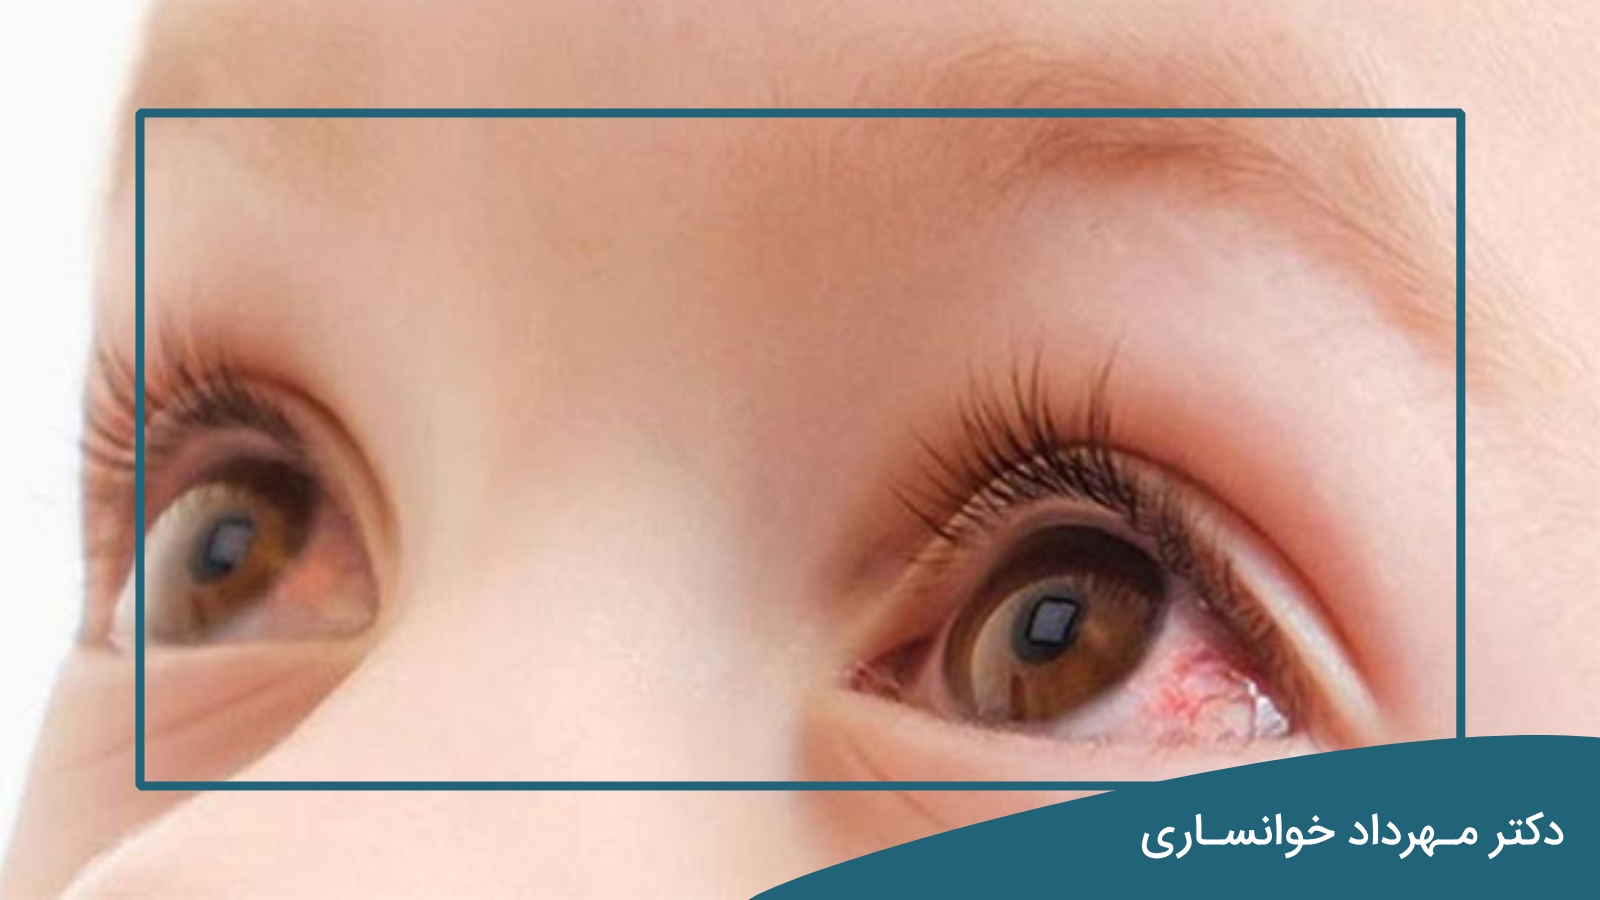 علت التهاب چشم در کودکان - دکتر خوانساری